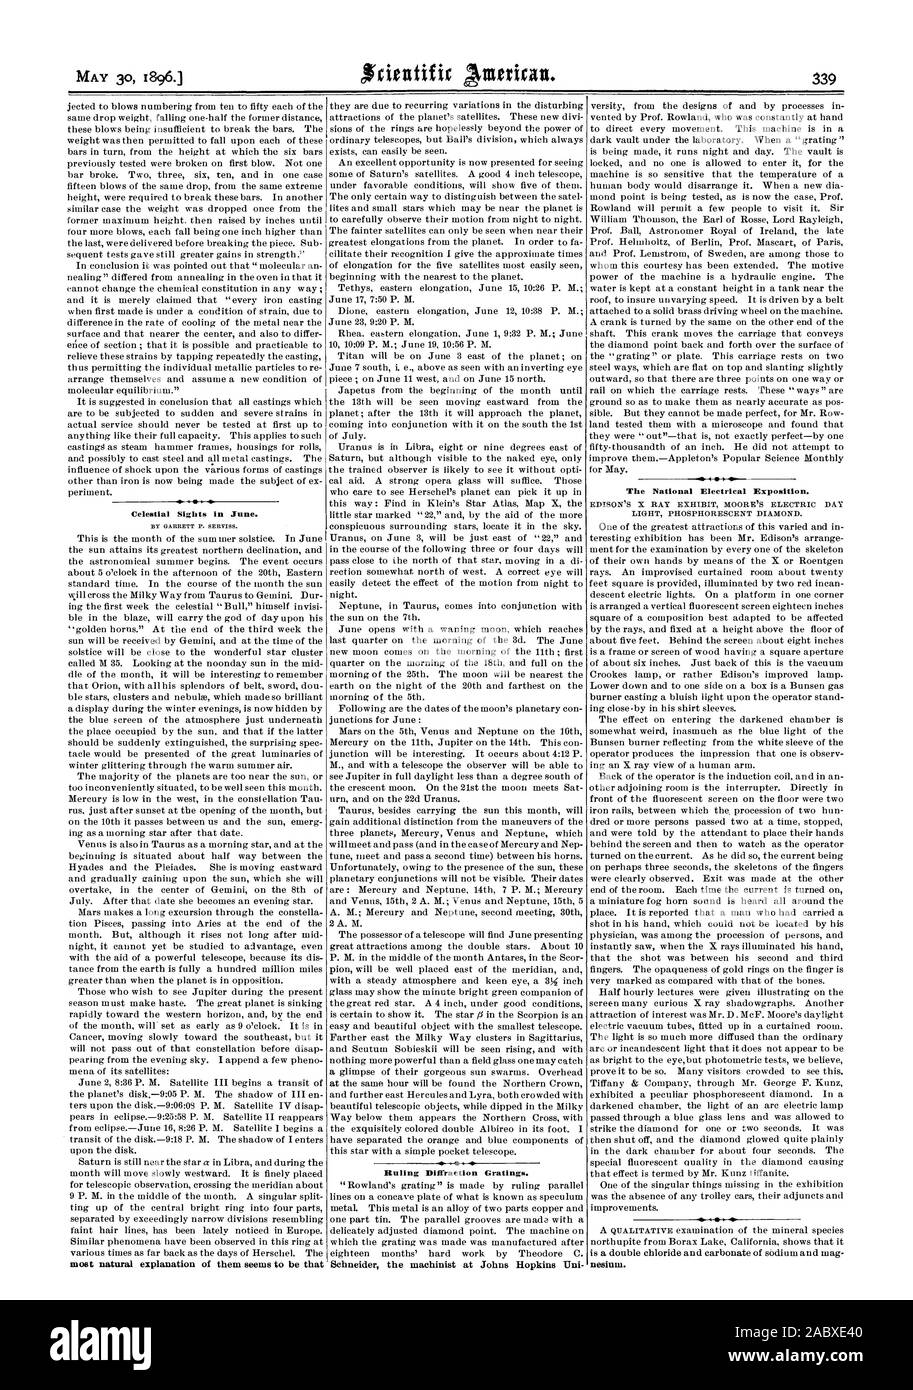 Astronomische Sehenswürdigkeiten im Juni. Die nationalen elektrischen Ausstellung. Urteil Beugungsgitter., Scientific American, 1896-05-30 Stockfoto